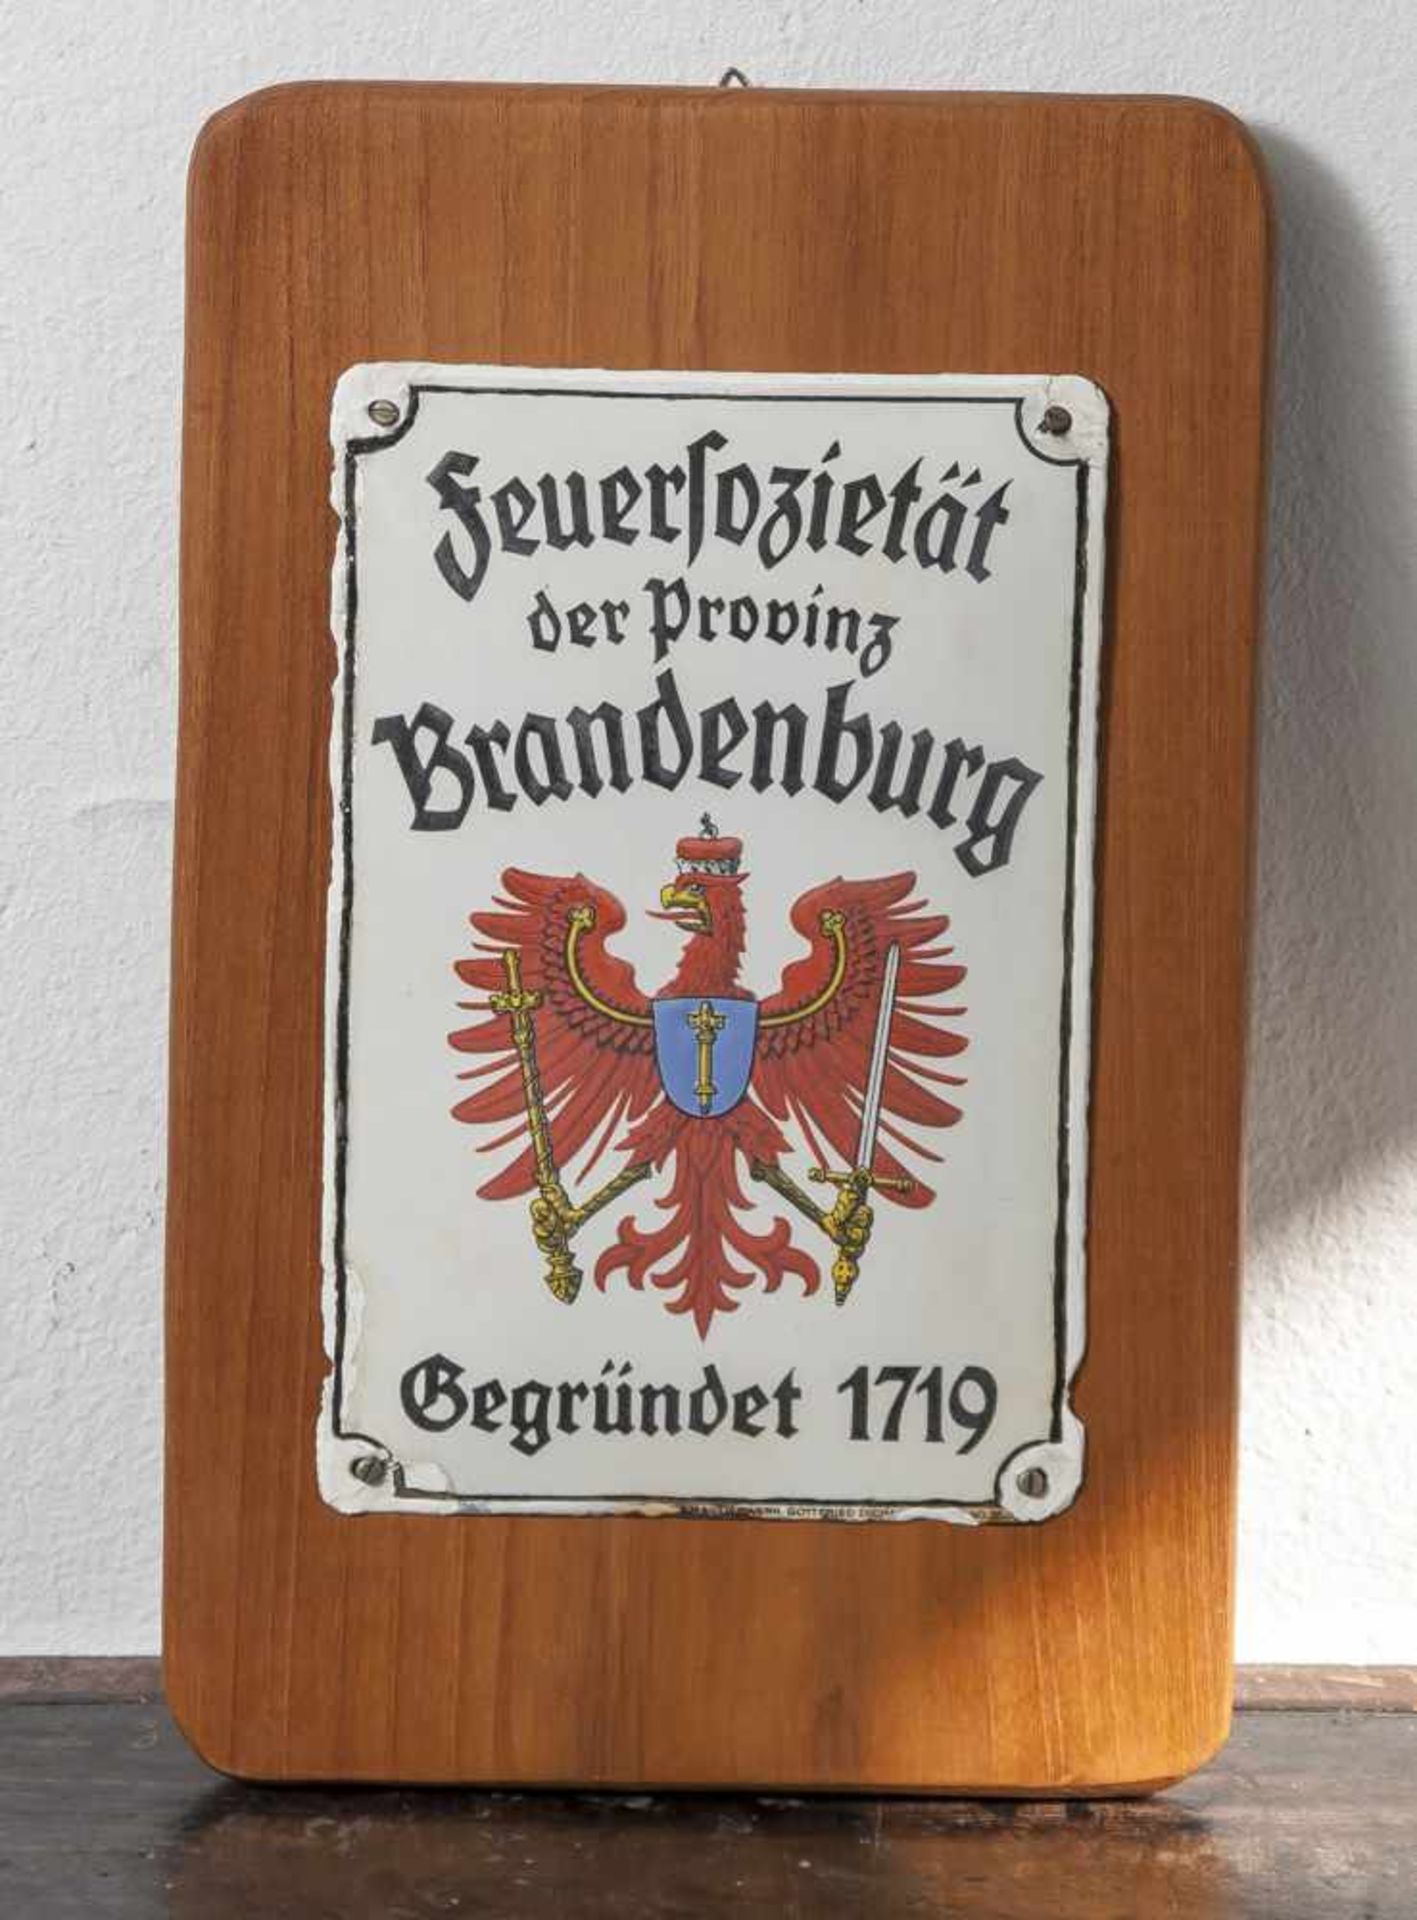 Emailschild, "Feuersozietät der Provinz Brandenburg. Gegründet 1719", gewölbt, auf weißem Fond